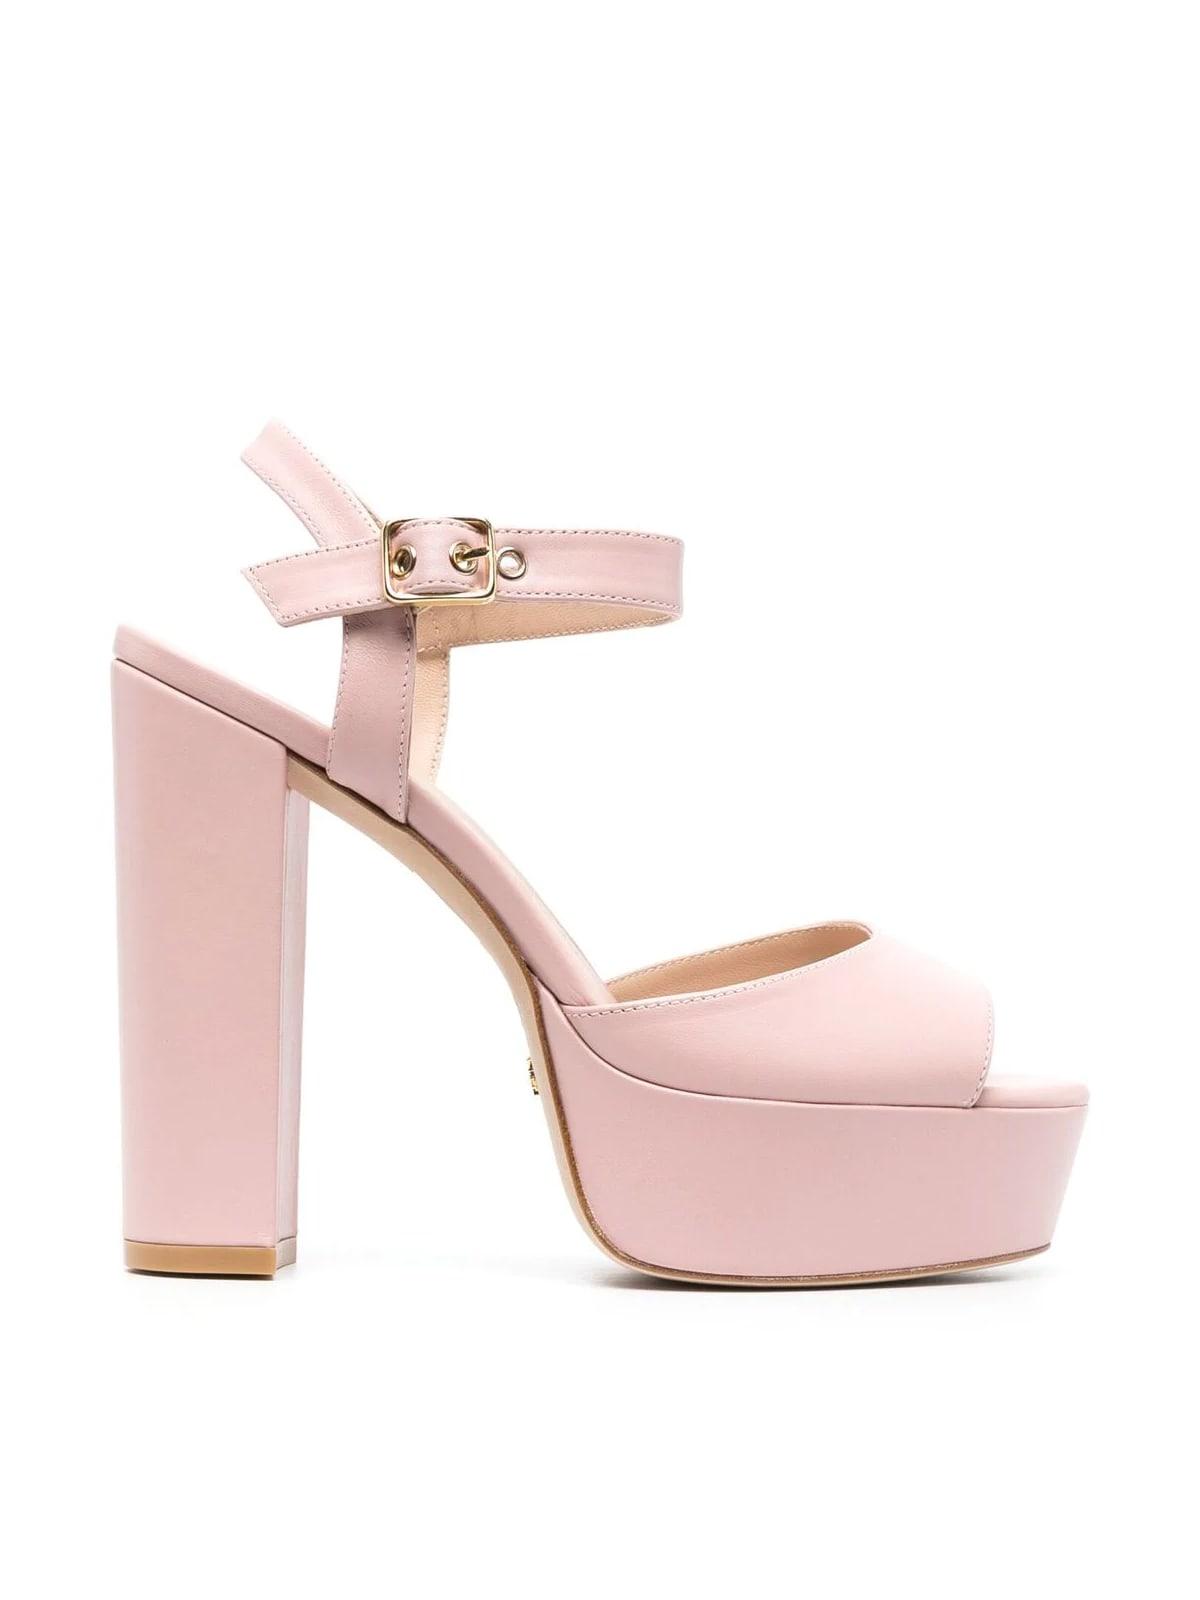 Stuart Weitzman Ryder 95 Platform Sandal Shoes in Pink | Lyst